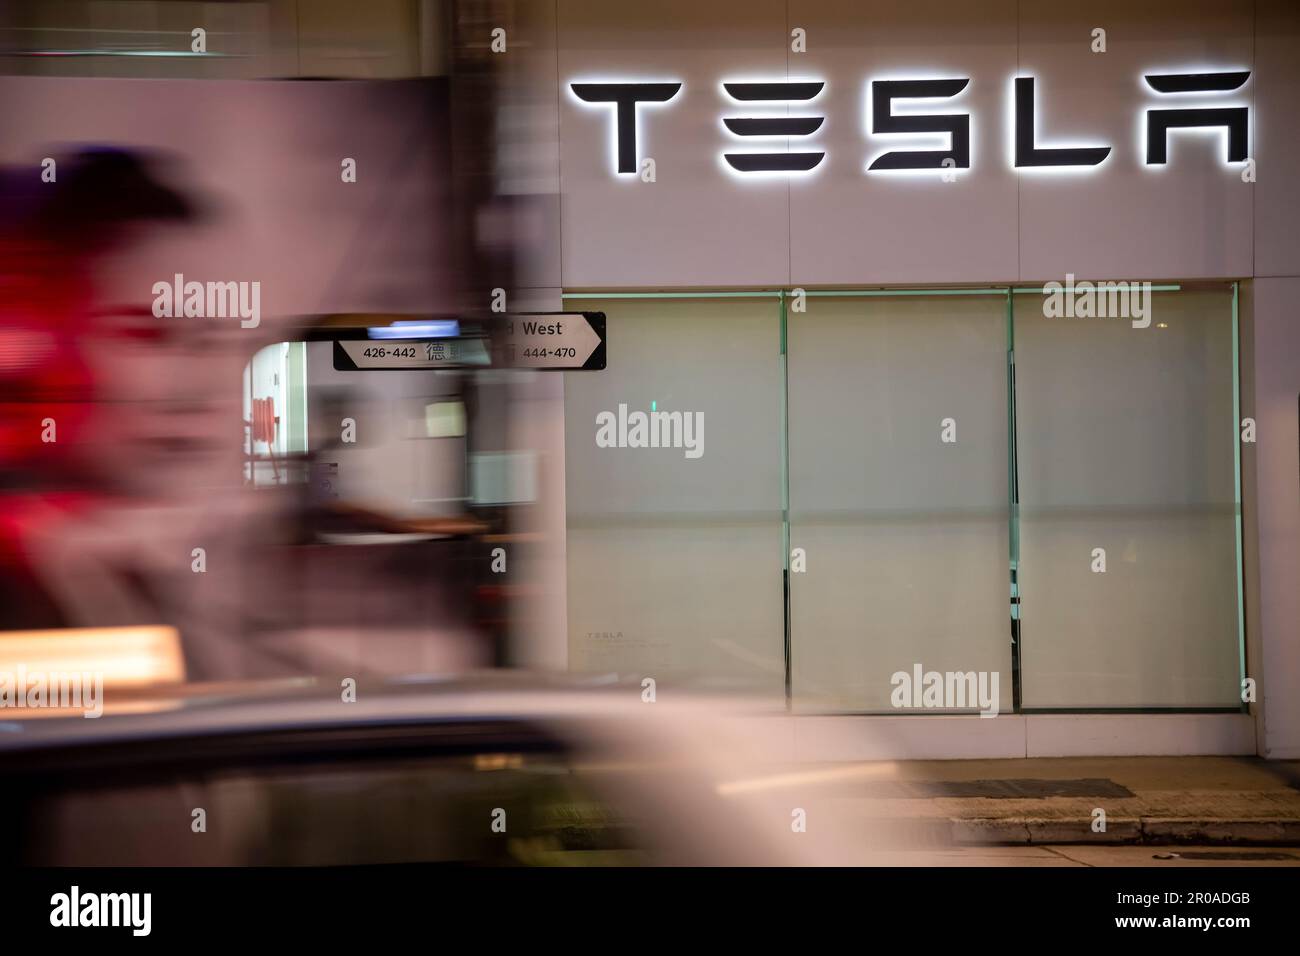 Tesla Cars, Hong Kong, China. Stock Photo